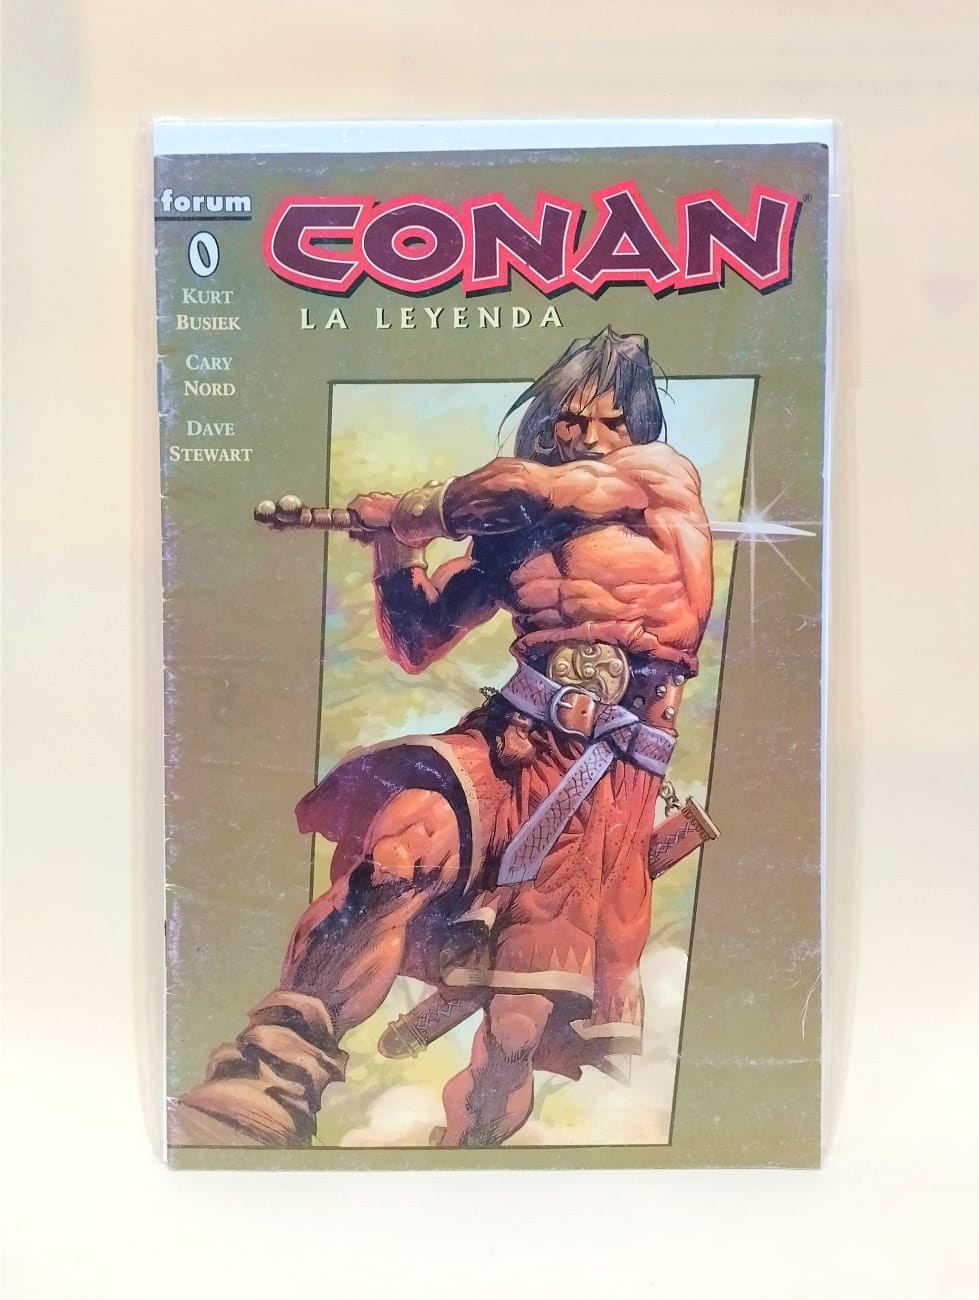 Conan Cero leyenda comic